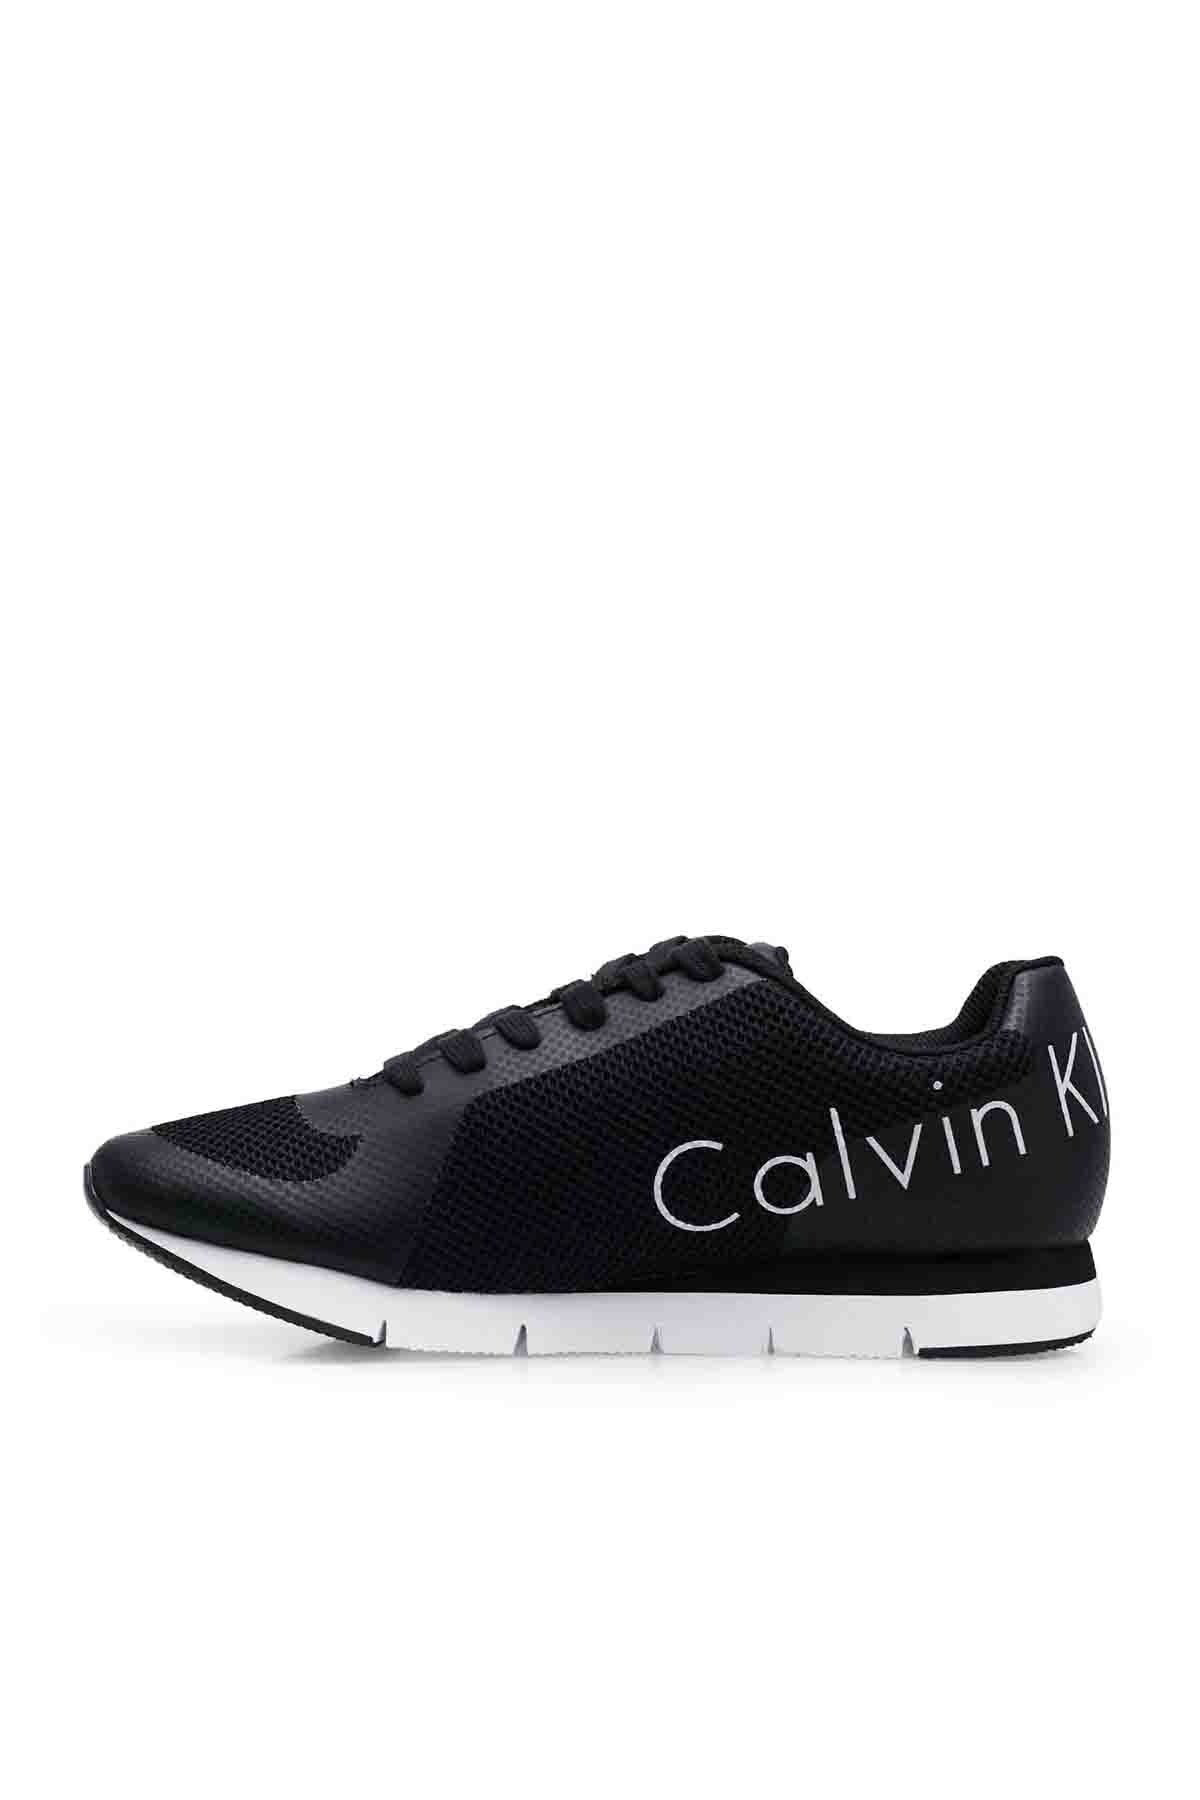 Calvin Klein Marka Logolu Erkek Ayakkabı 0000SE8526 BLK SİYAH